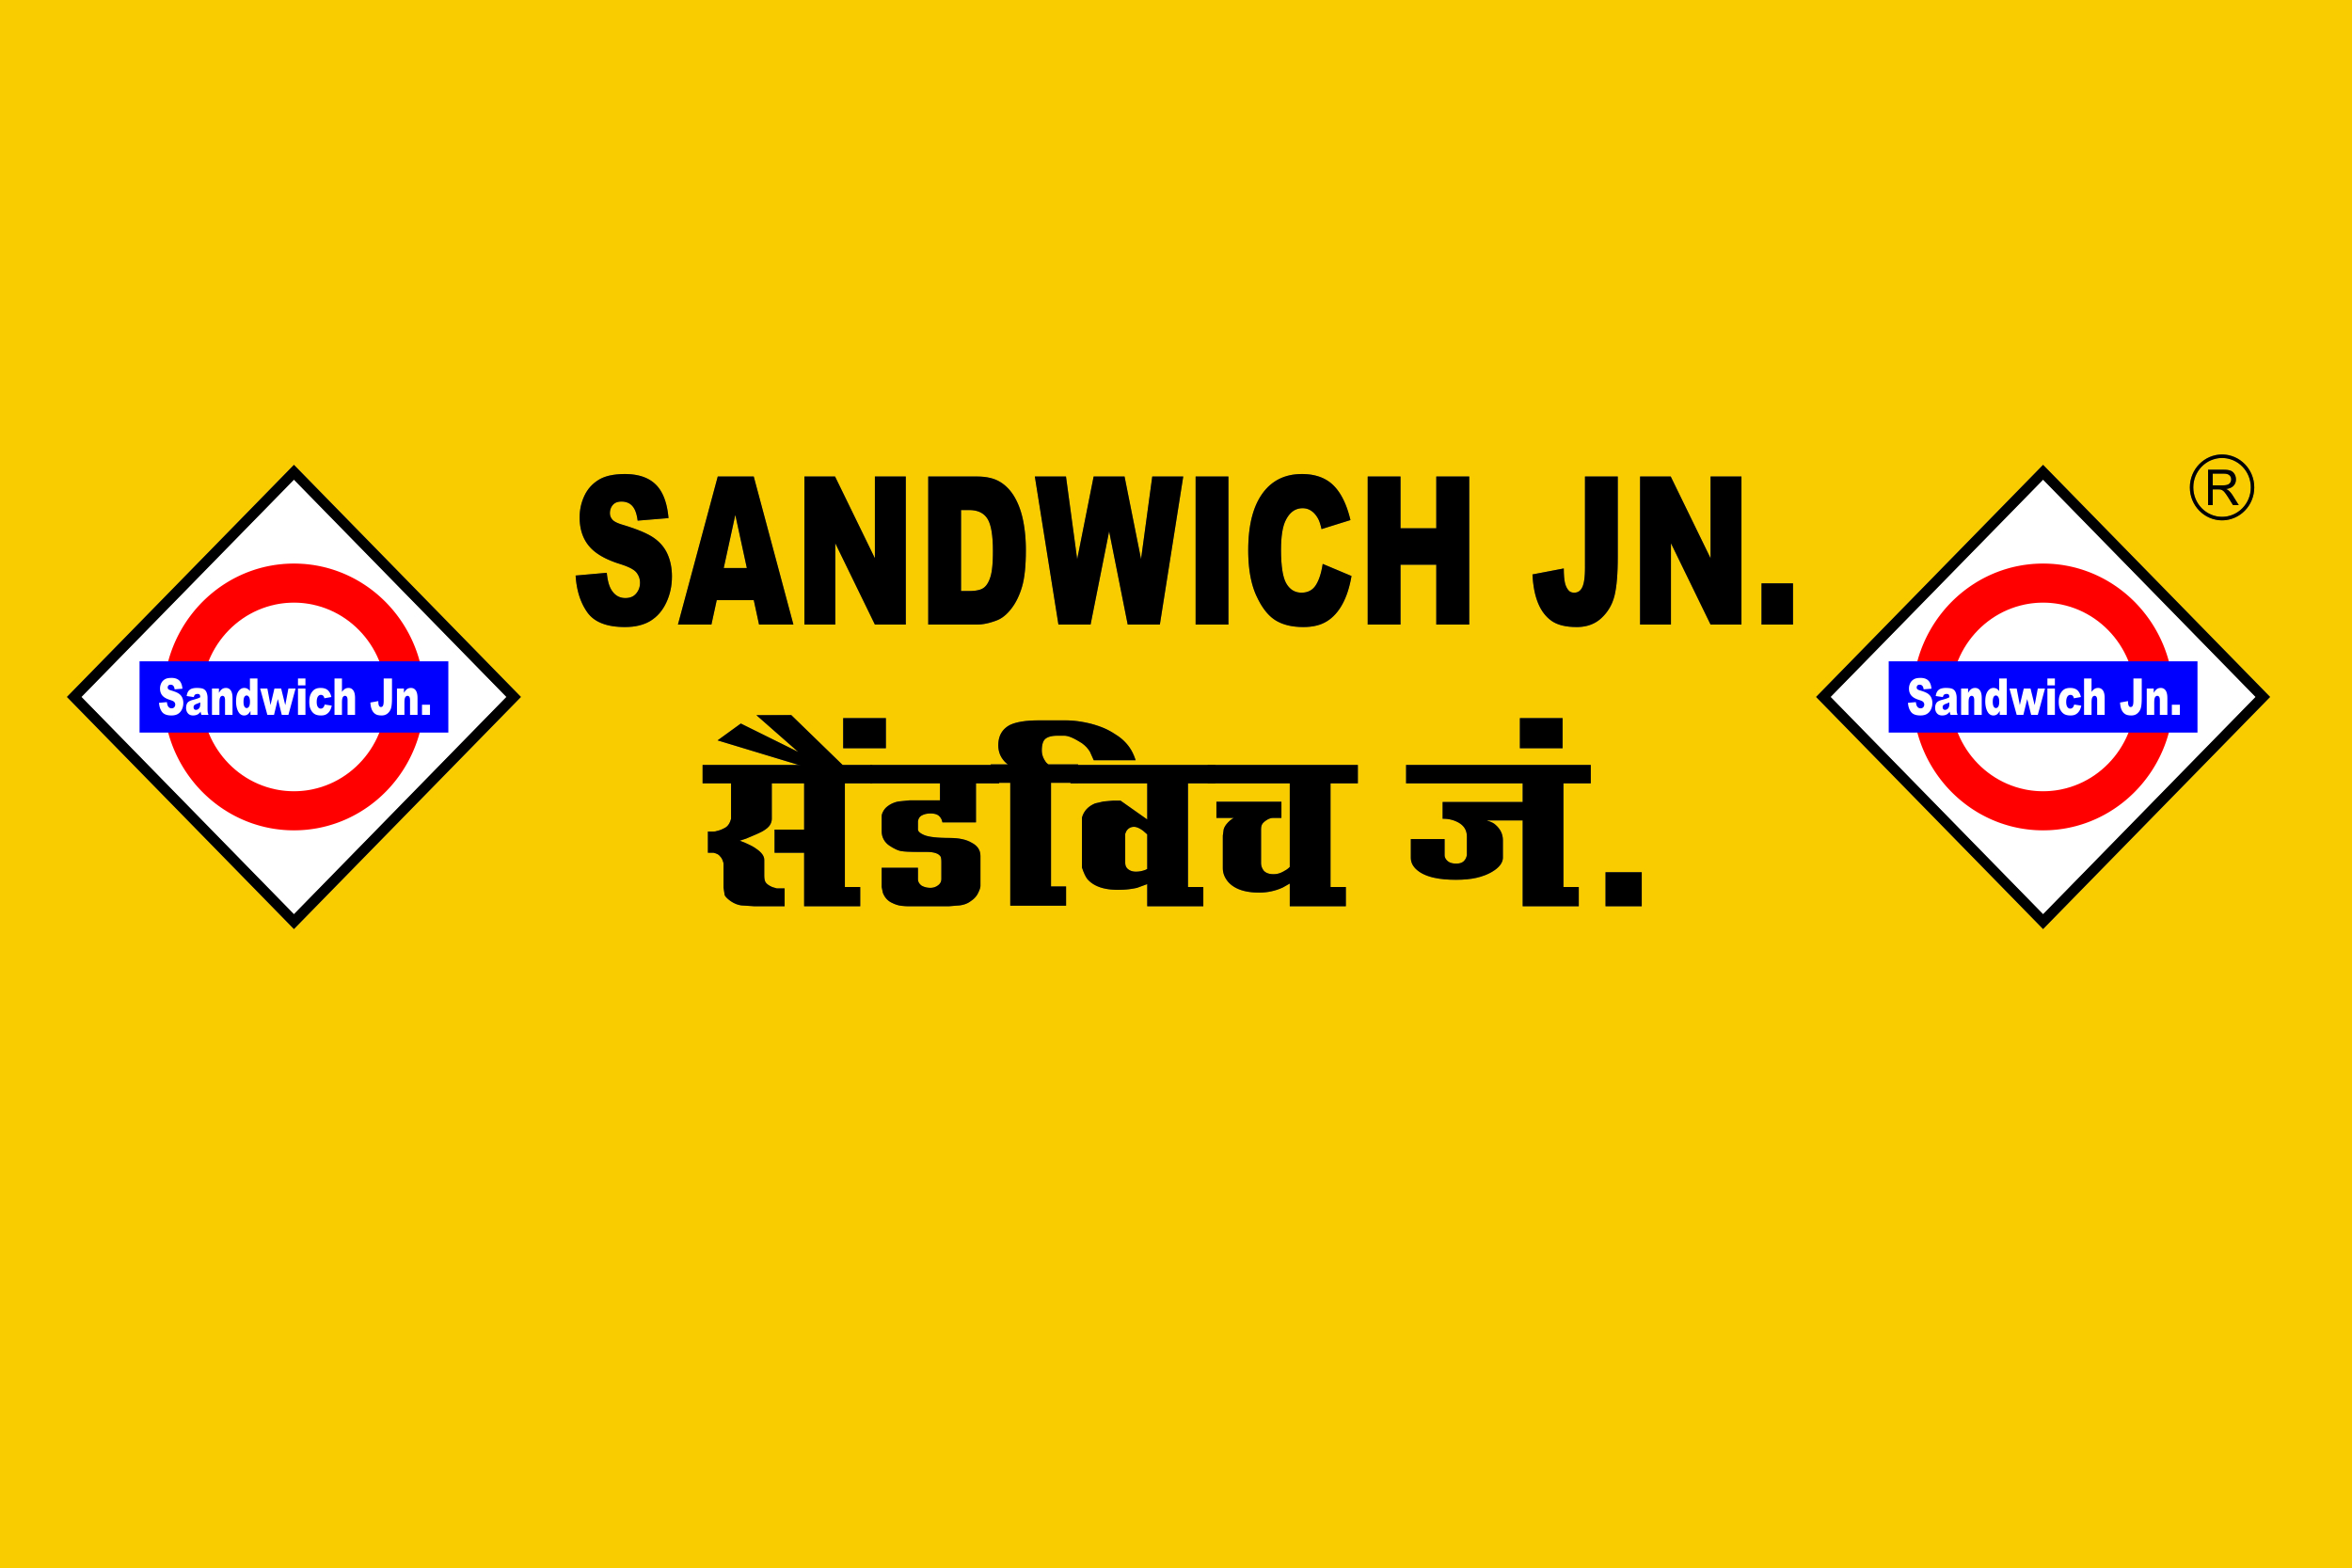 Sandwich junction